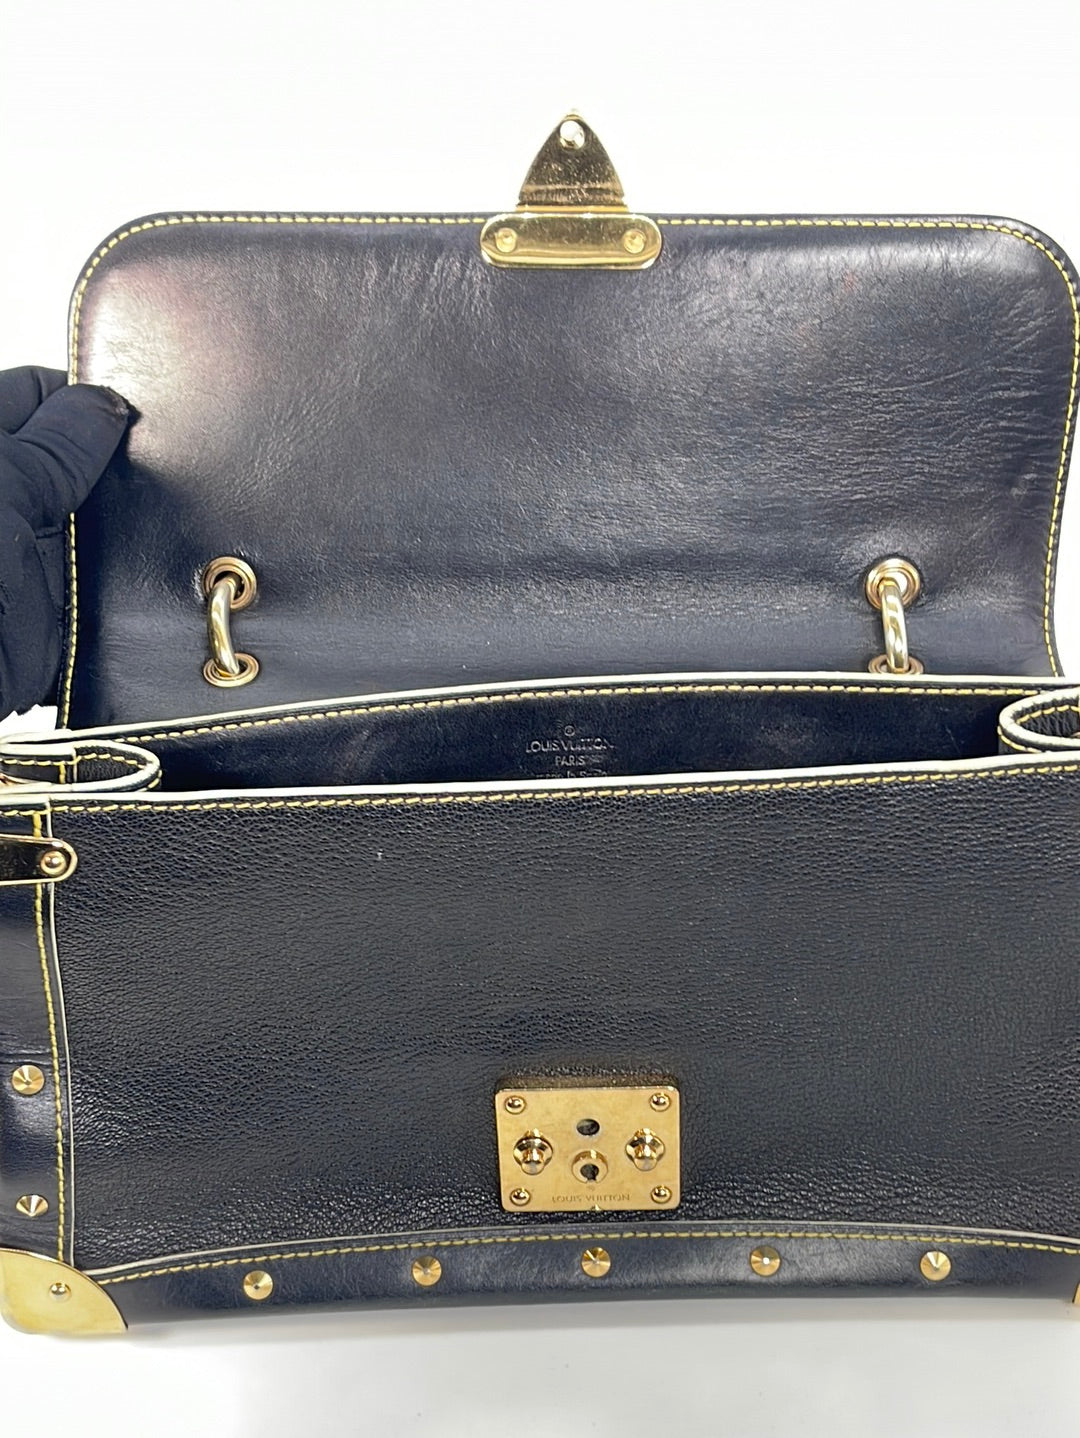 Authentic Louis Vuitton Suhali Le Talentueux Blue Leather Shoulder Bag